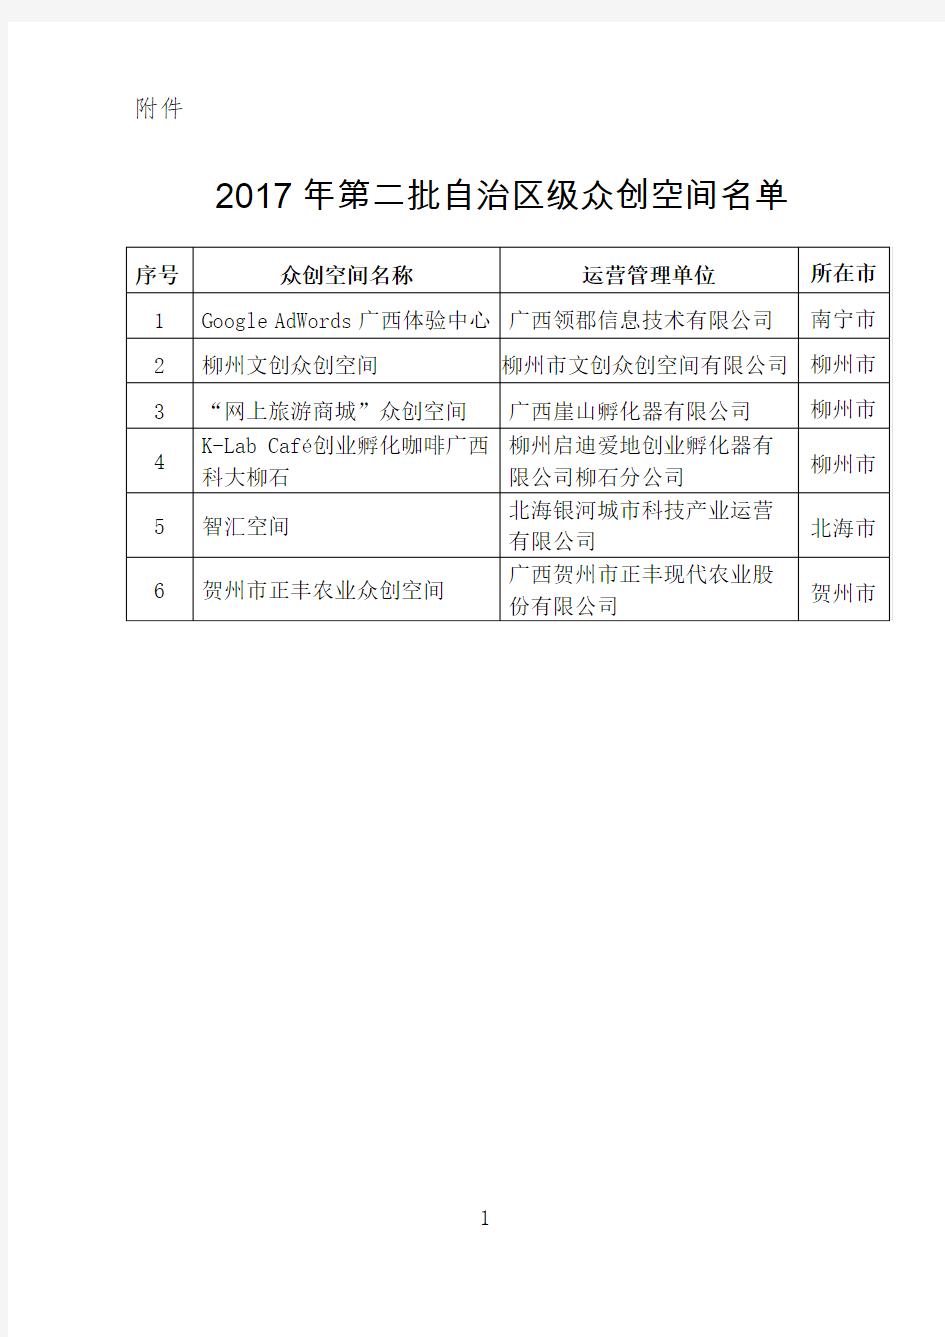 2017年广西第二批自治区级众创空间名单